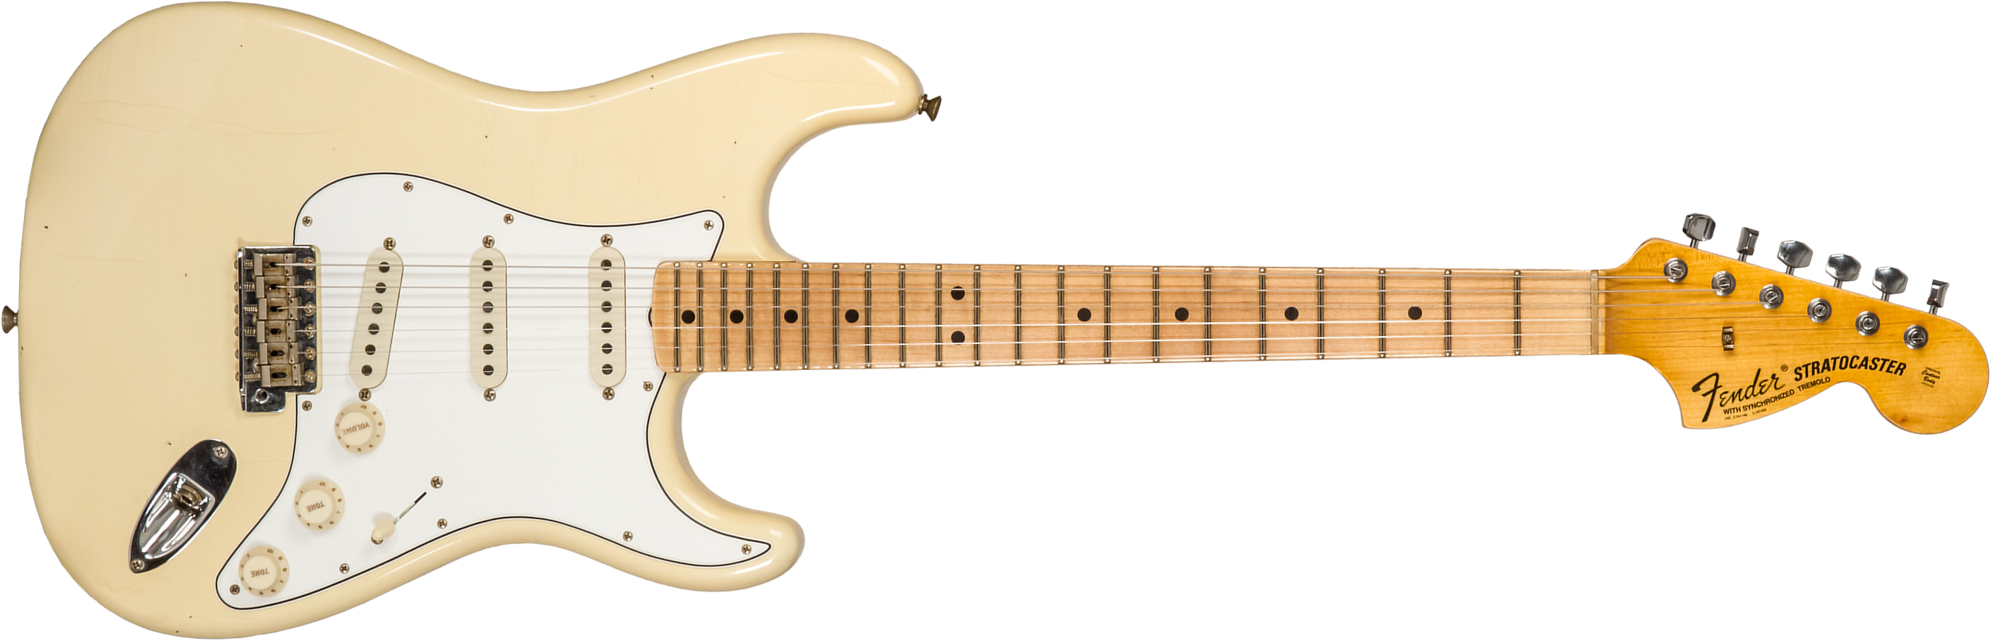 Fender Custom Shop Strat 1969 3s Trem Mn #cz576216 - Journeyman Relic Aged Vintage White - Elektrische gitaar in Str-vorm - Main picture